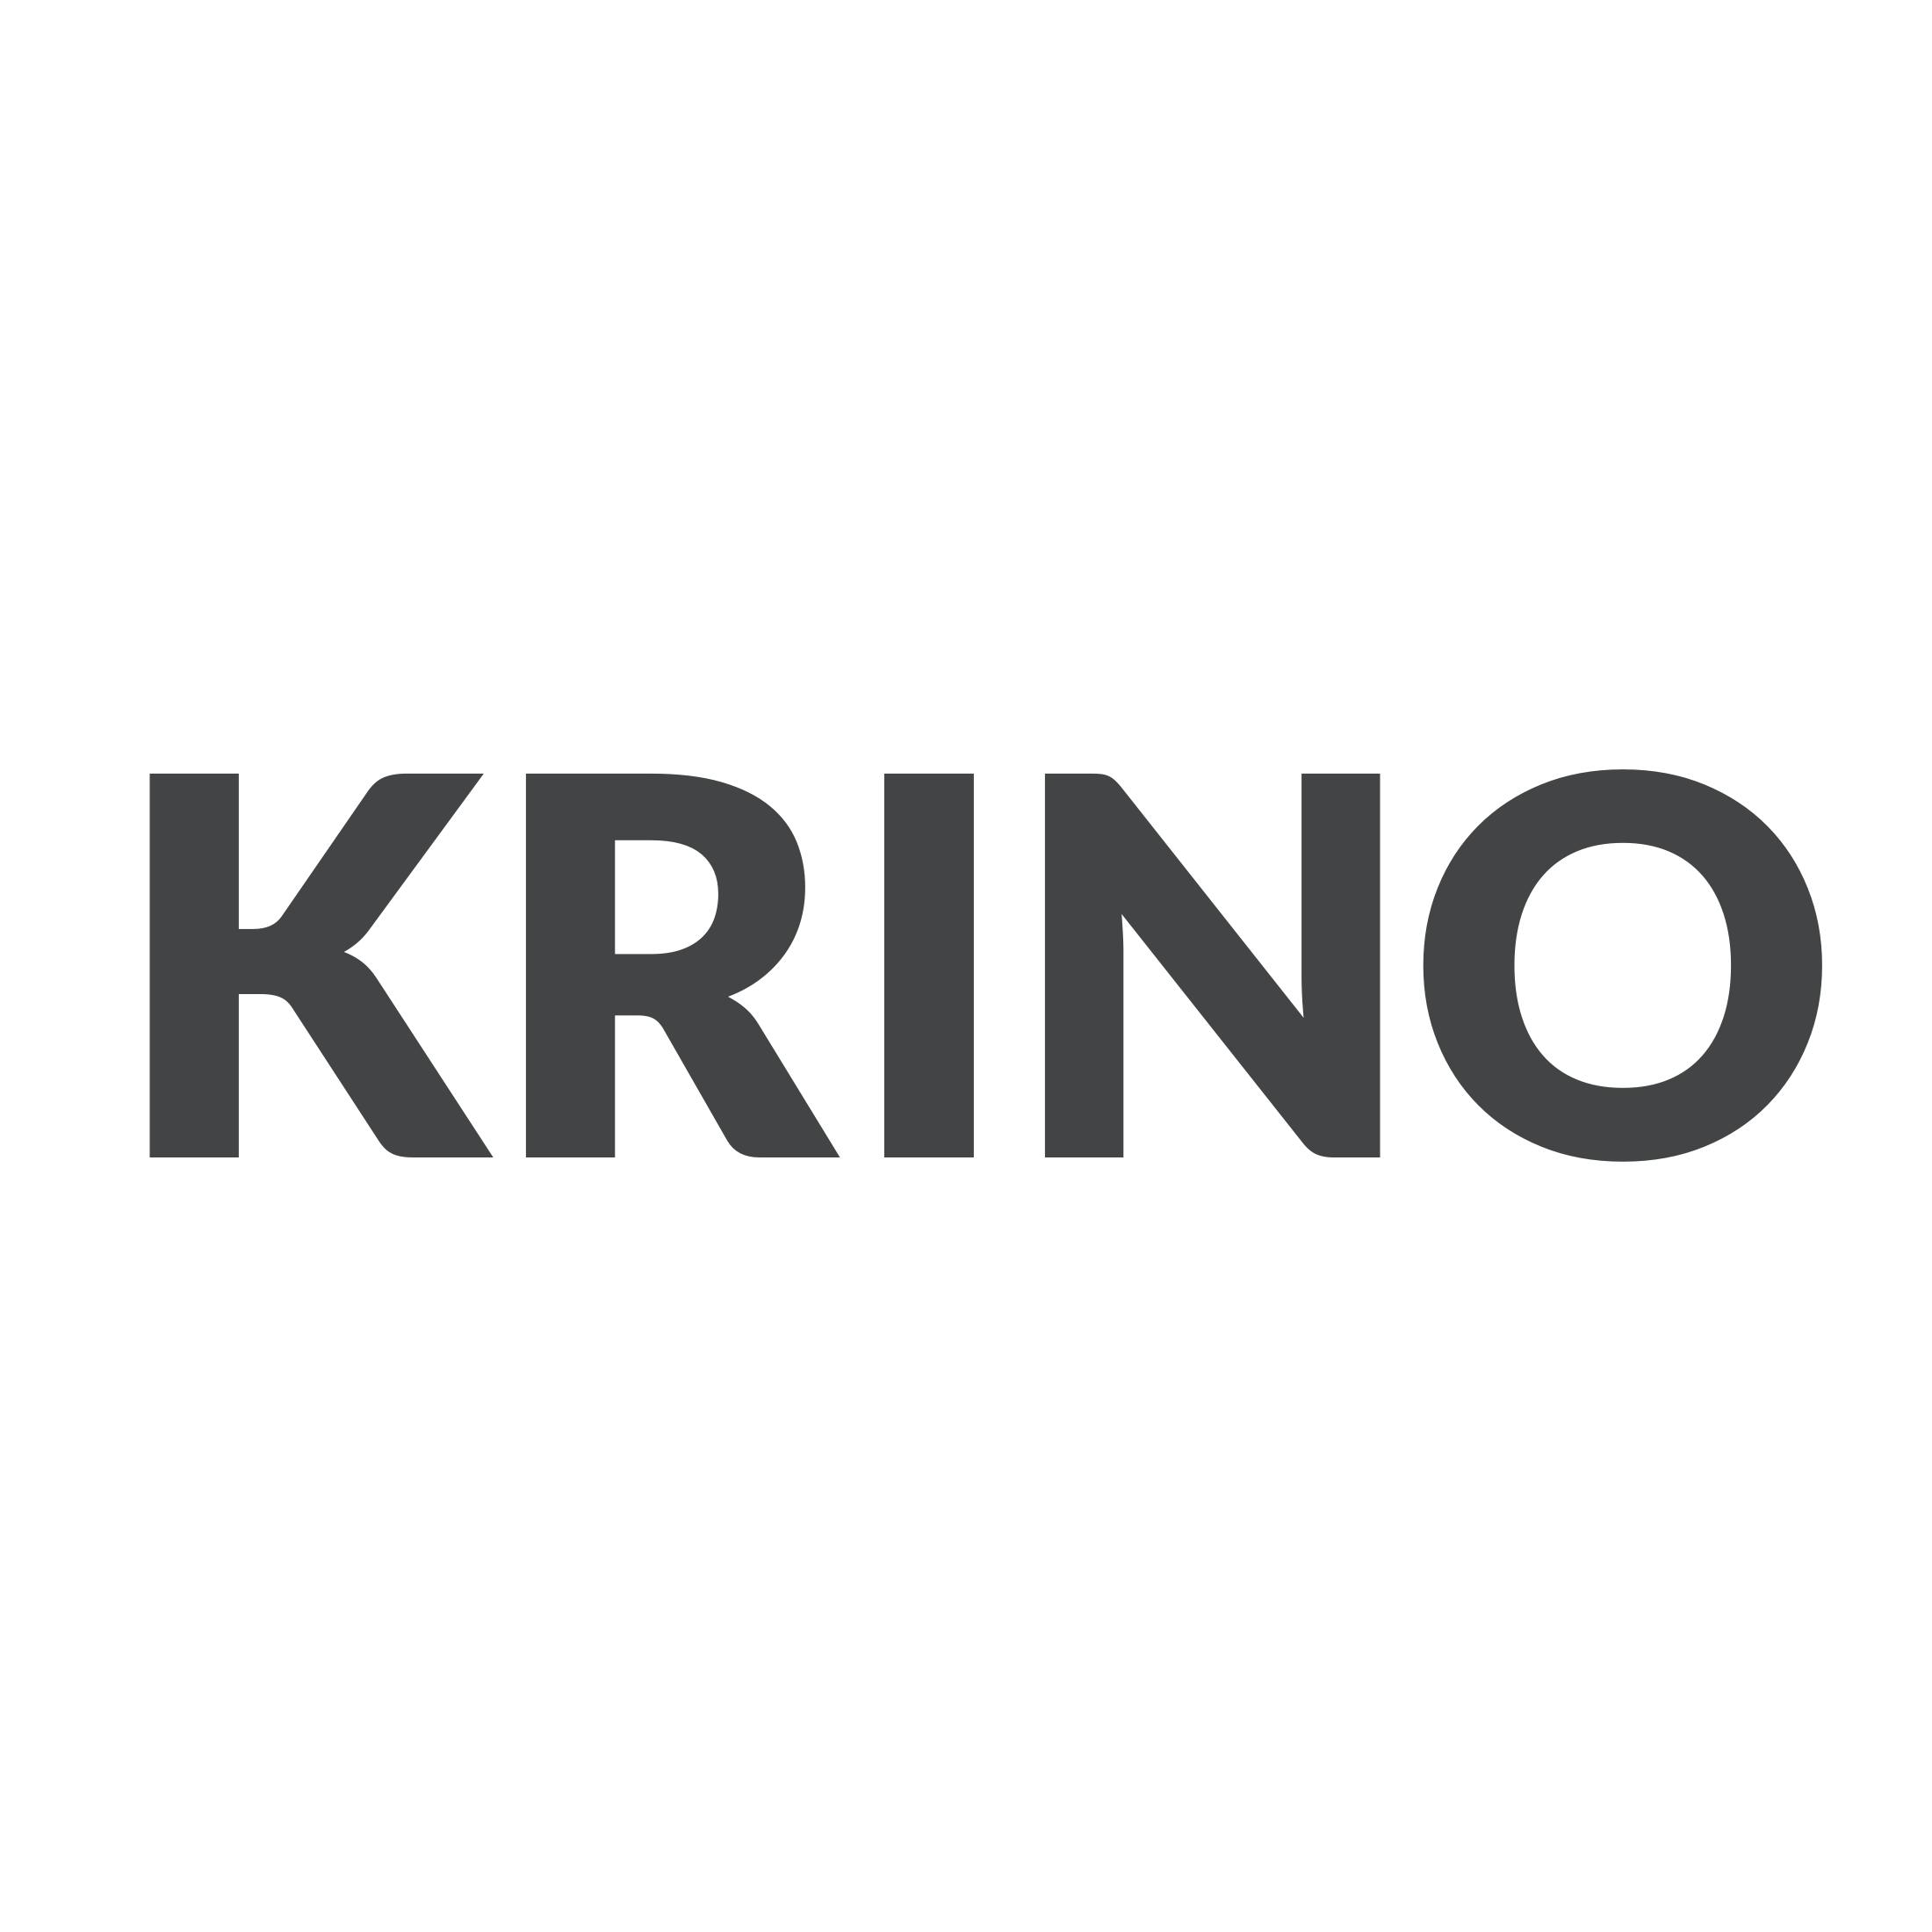 Krino | Signals